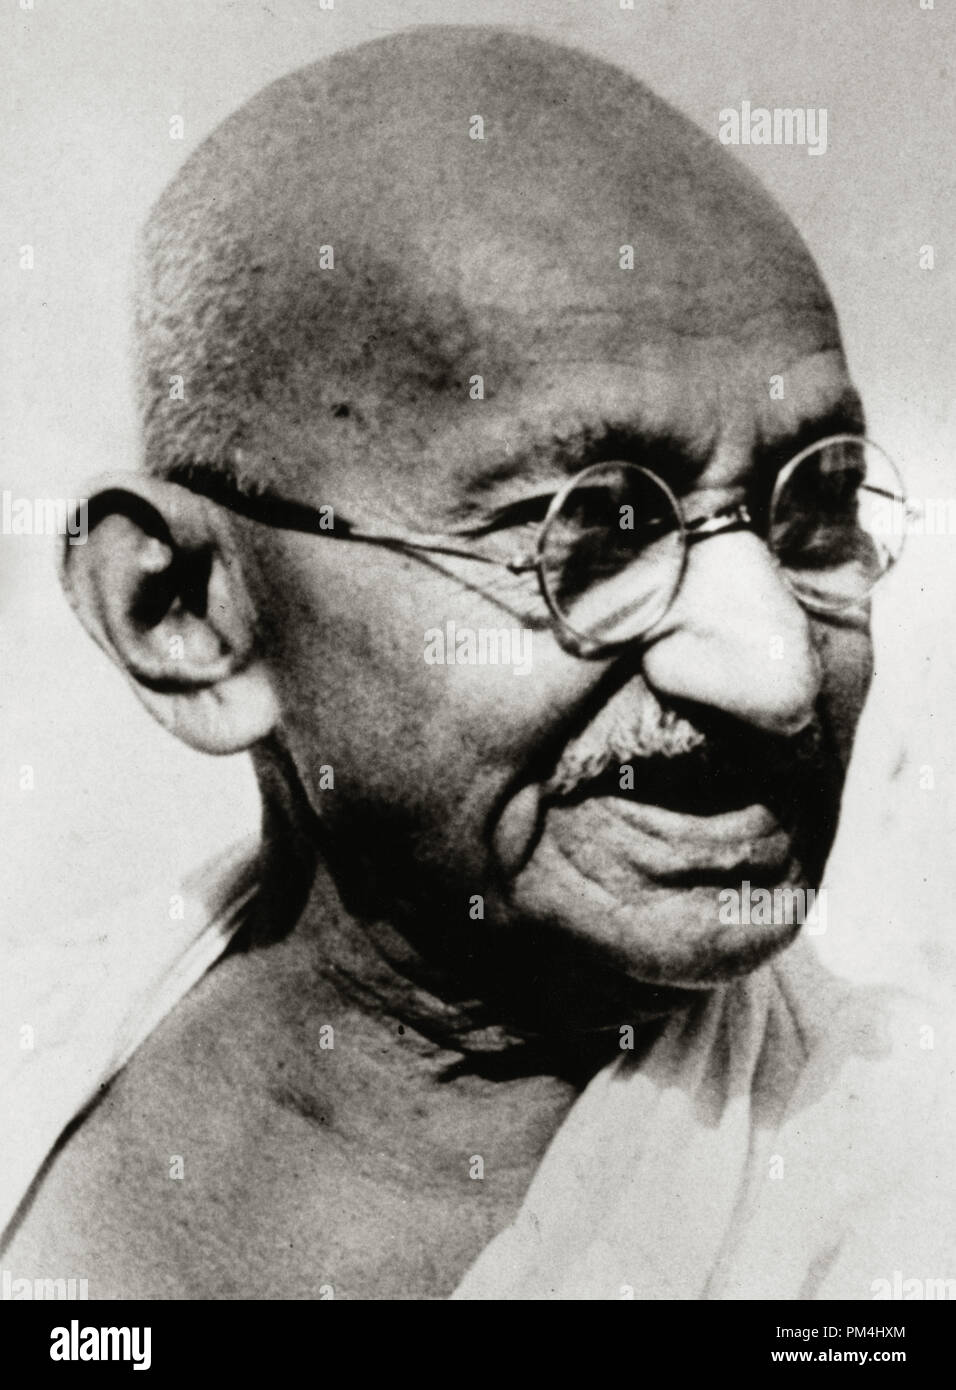 Mahatma Gandhi (Mohandas Karamchand Gandhi) en su 78º cumpleaños, el 22 de septiembre de 1946 Archivo de referencia # 1003 433tha Foto de stock